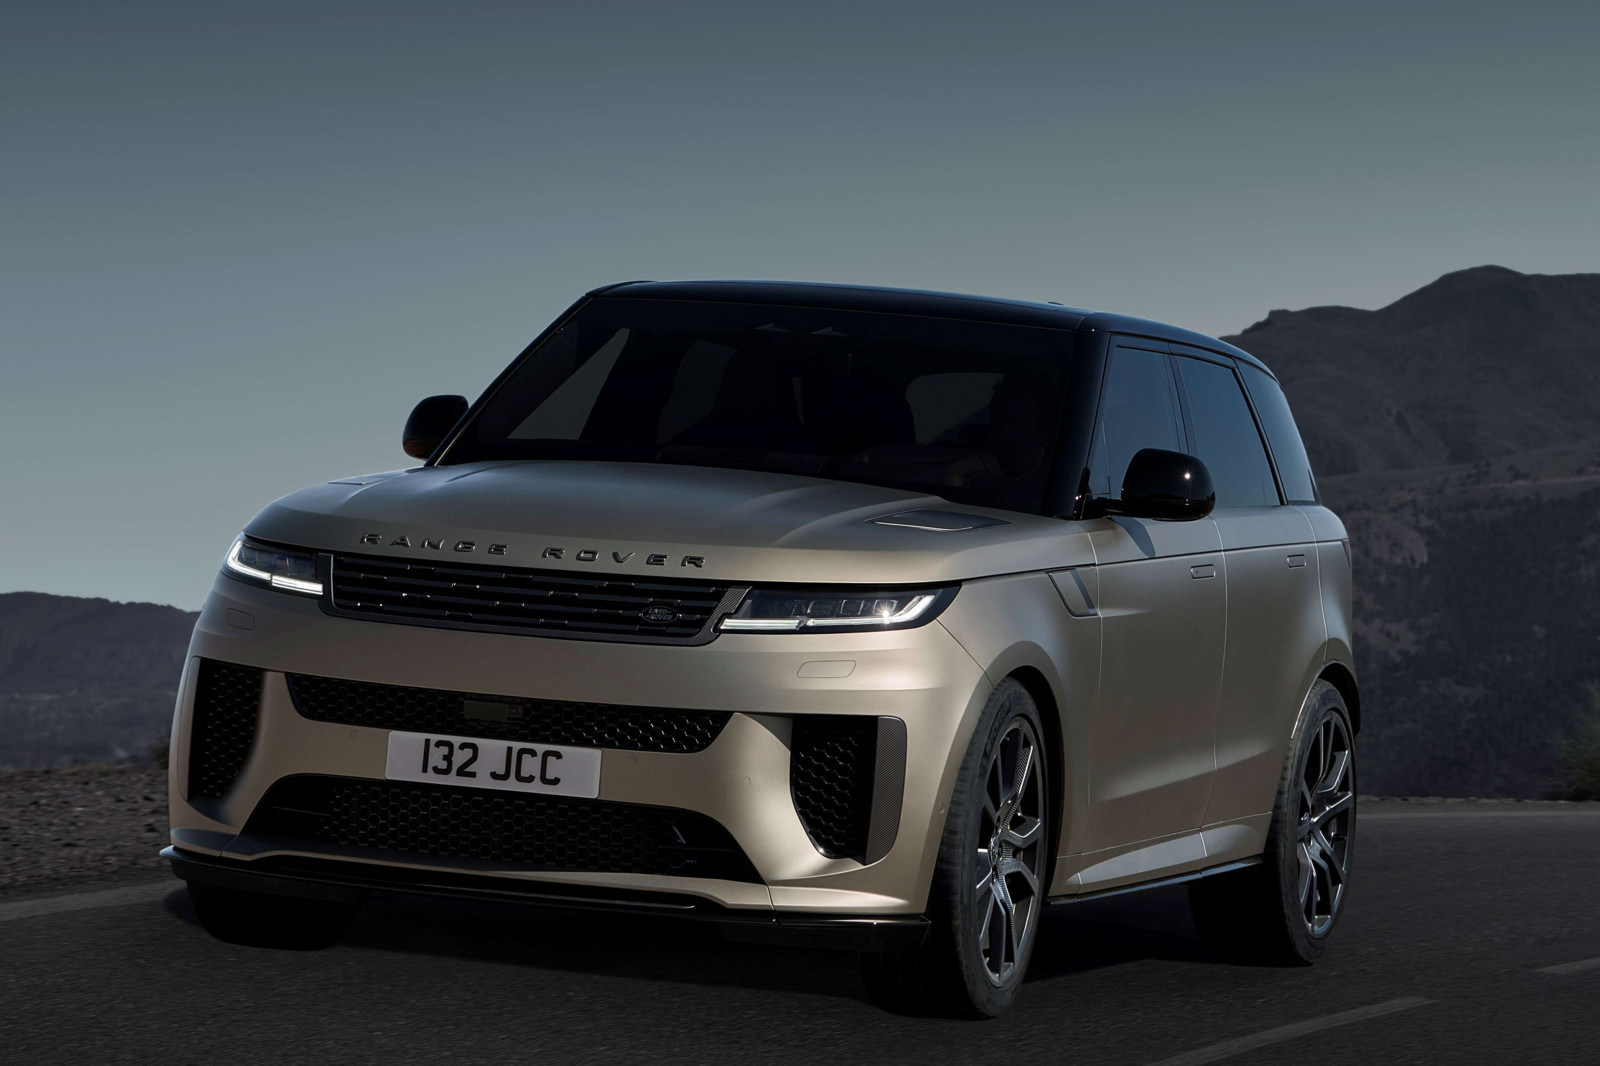 Zweifellos ist das neue Spitzenmodell des schon legendÃ¤ren Range Rover deutlich aus der Zeit gefallen. Wer braucht wirklich 467 kW bzw. 635 PS in einem GelÃ¤ndewagen? 